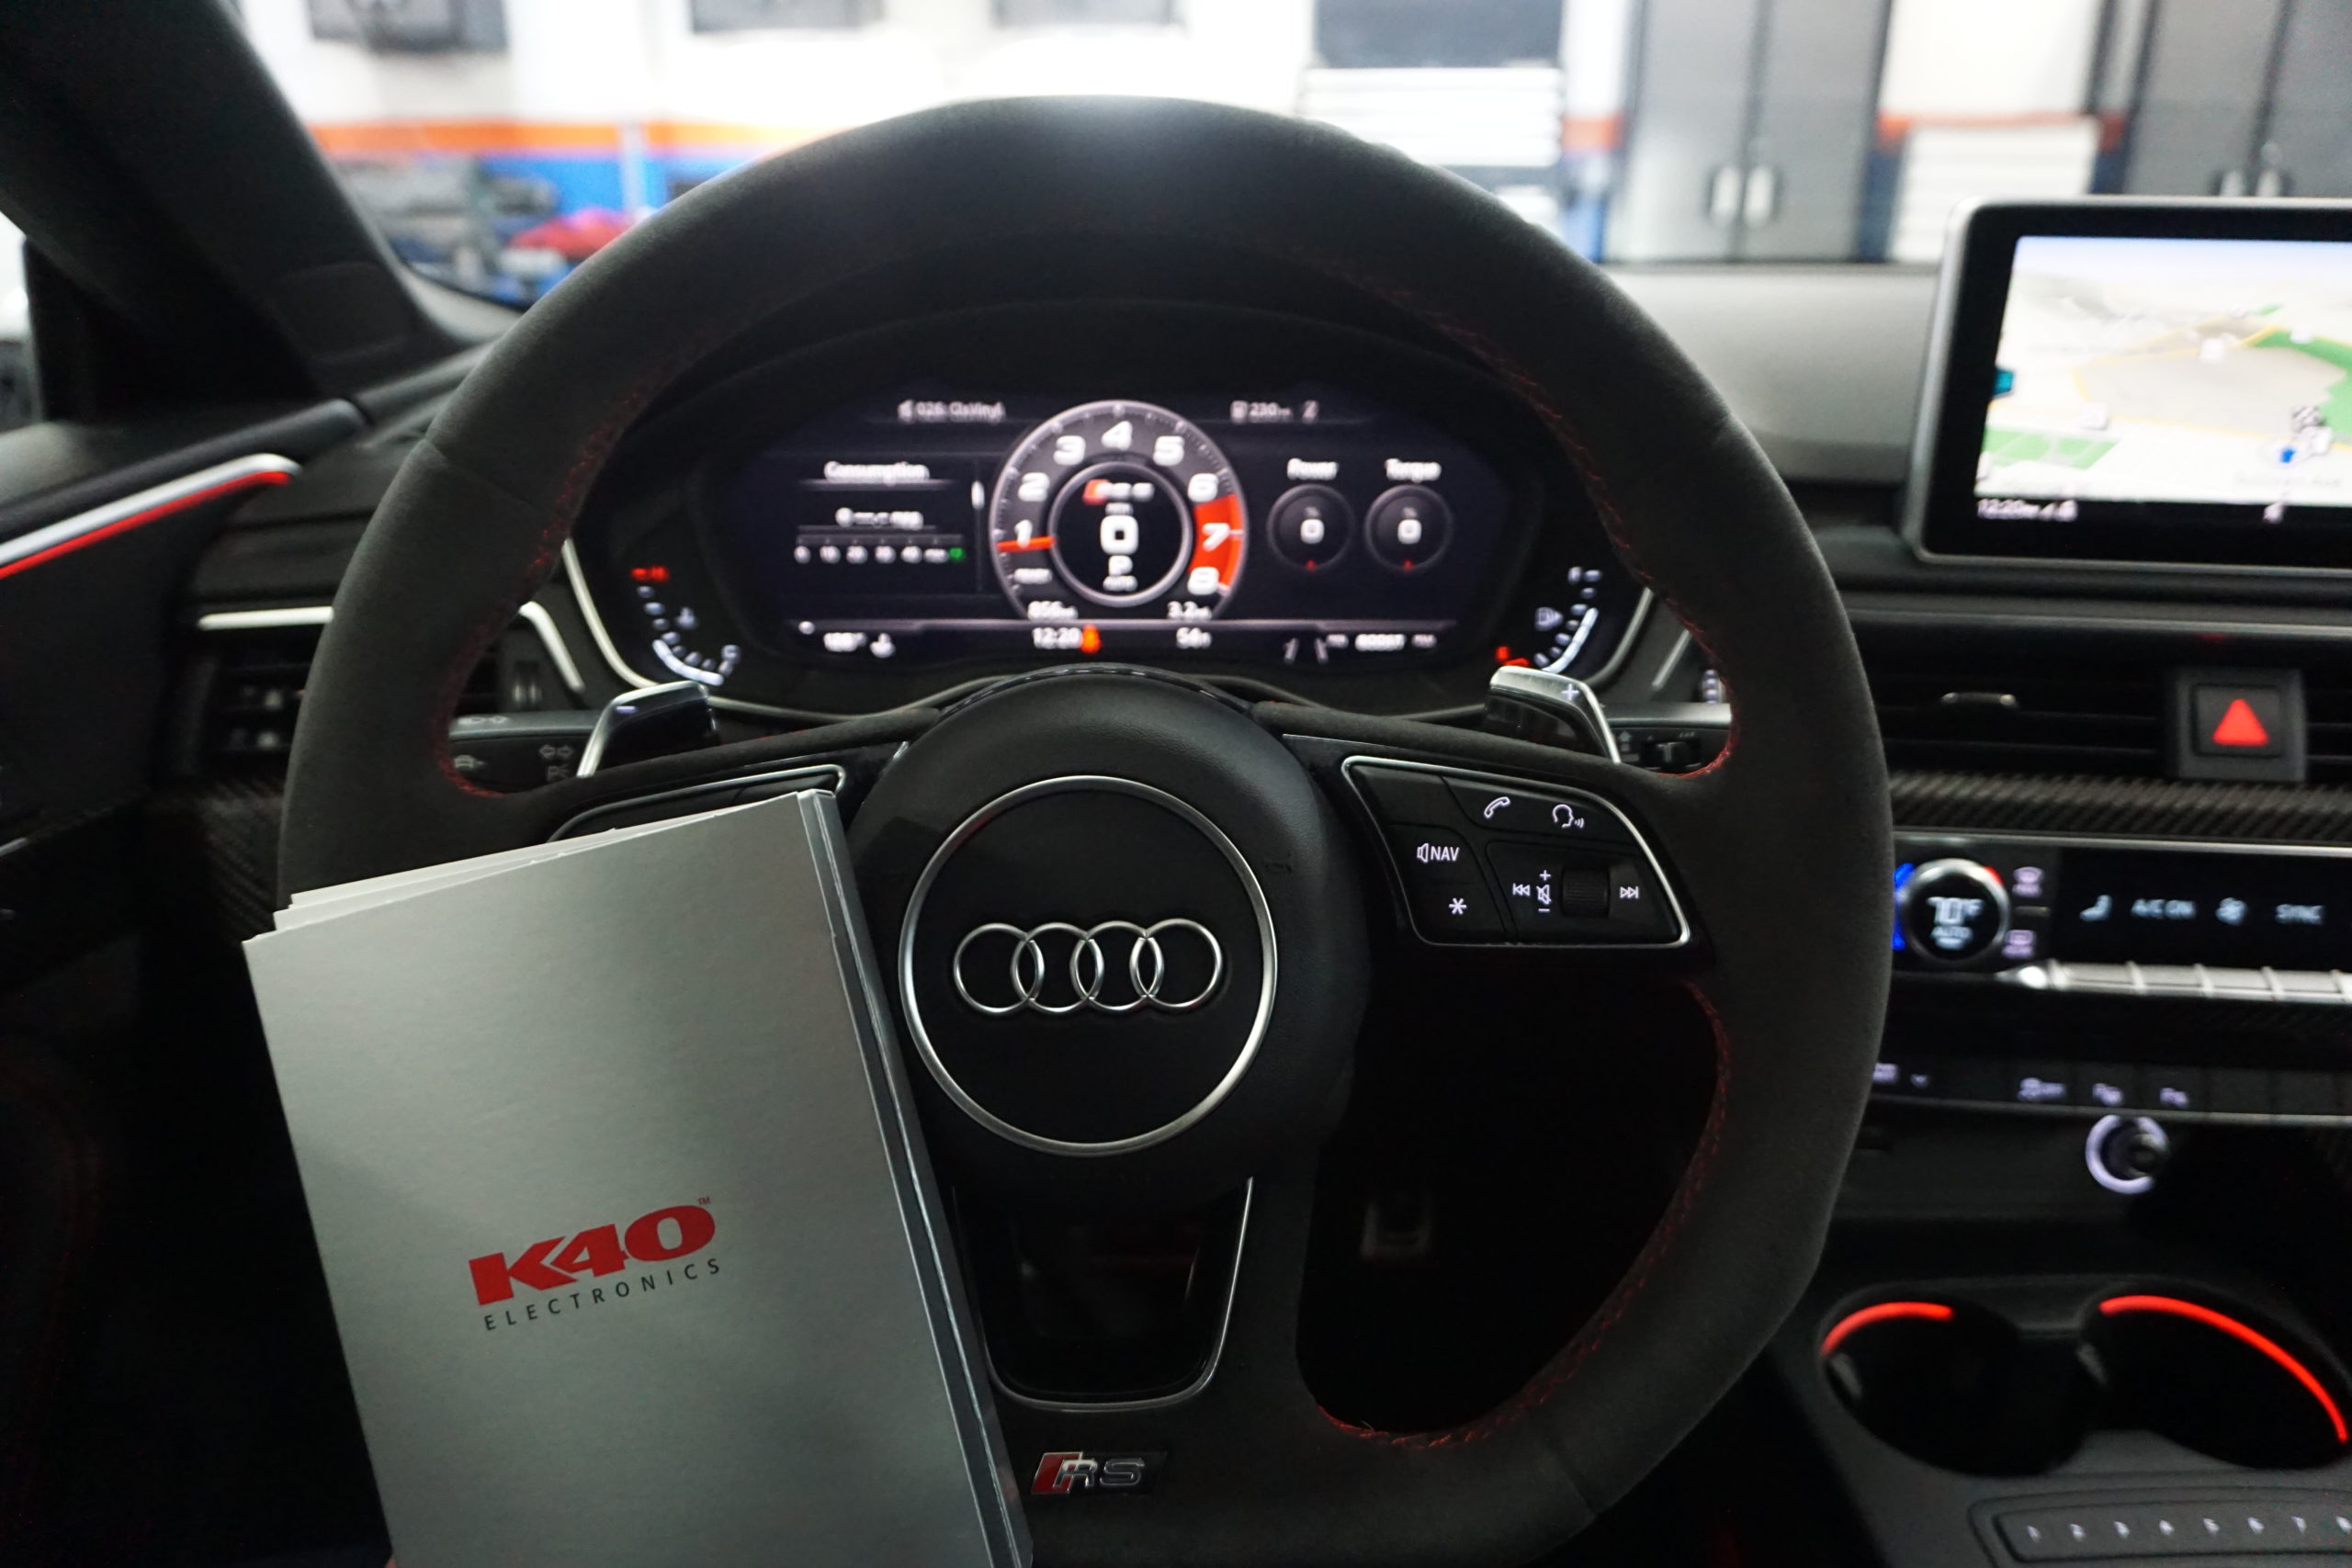 K40 Custom Radar & Laser System on a 2019 Audi RS5 in Westminster, MD